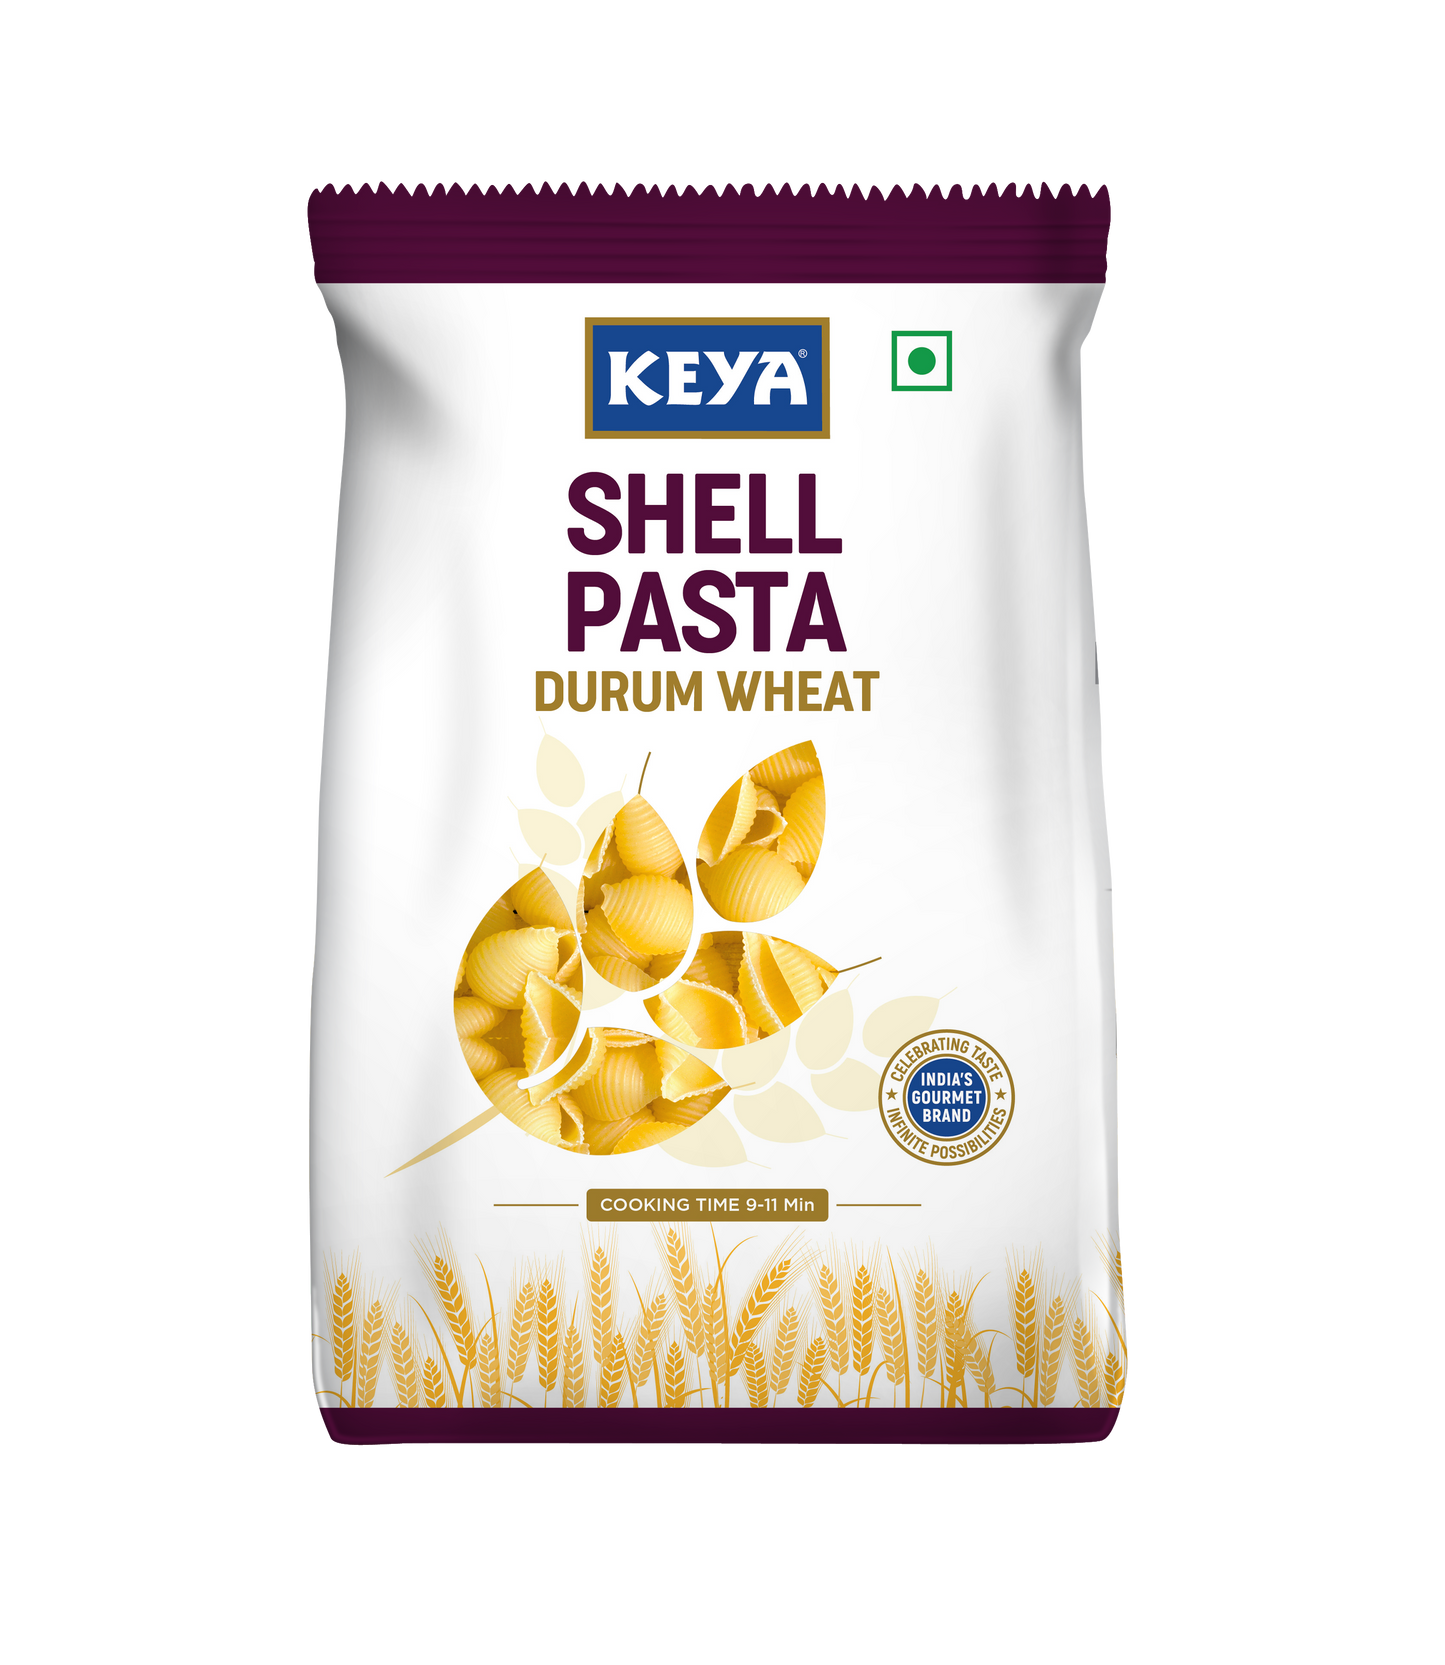 Keya 100% Durum Wheat Shell Pasta, 400g